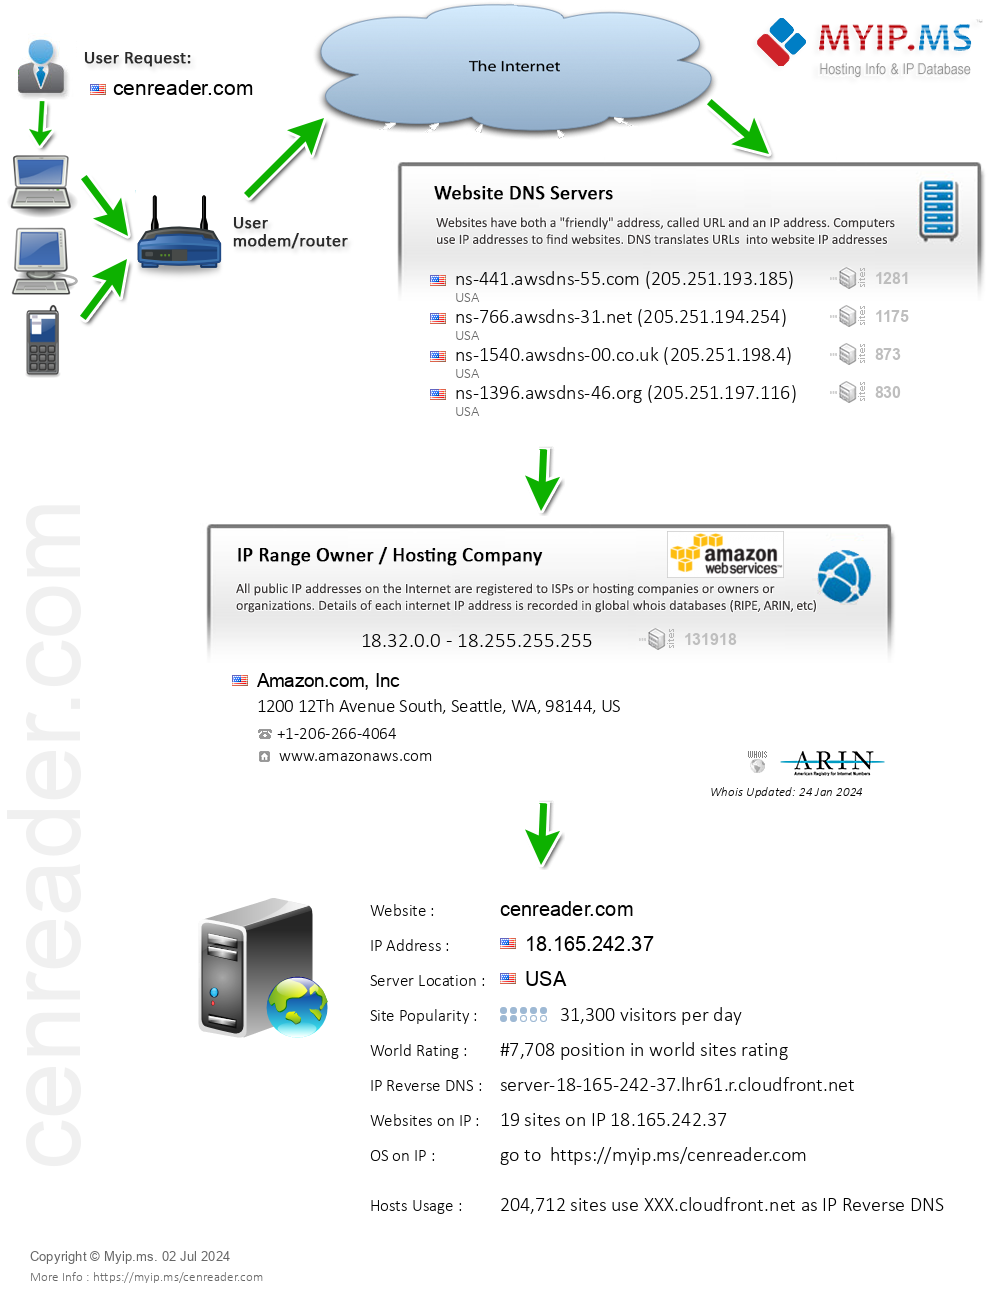 Cenreader.com - Website Hosting Visual IP Diagram